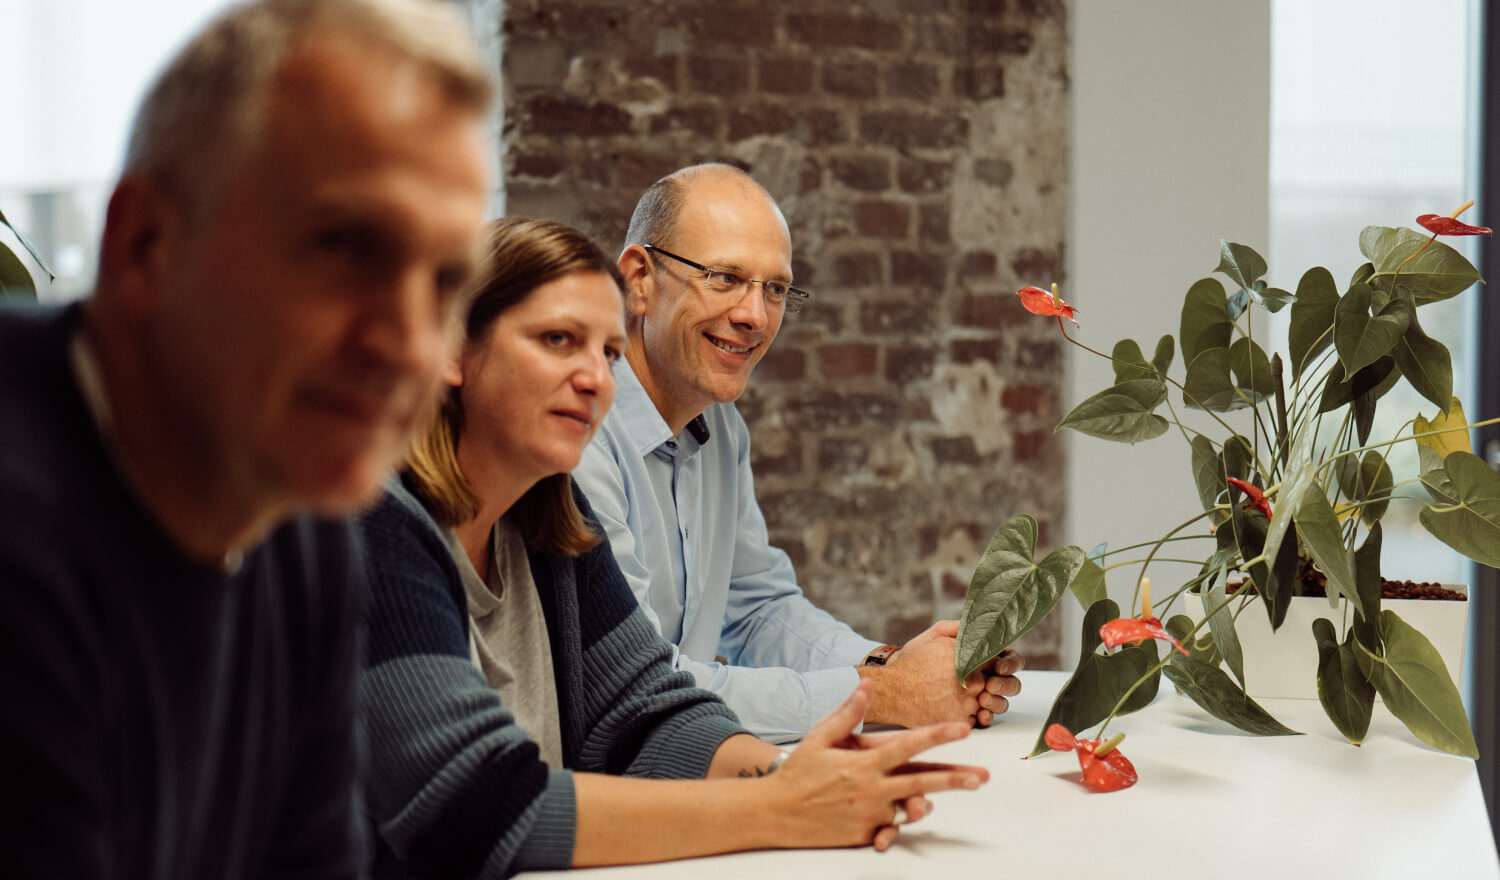 Drei Personen sitzen lächelnd an einem Tisch mit einer Pflanze mit roten Blüten